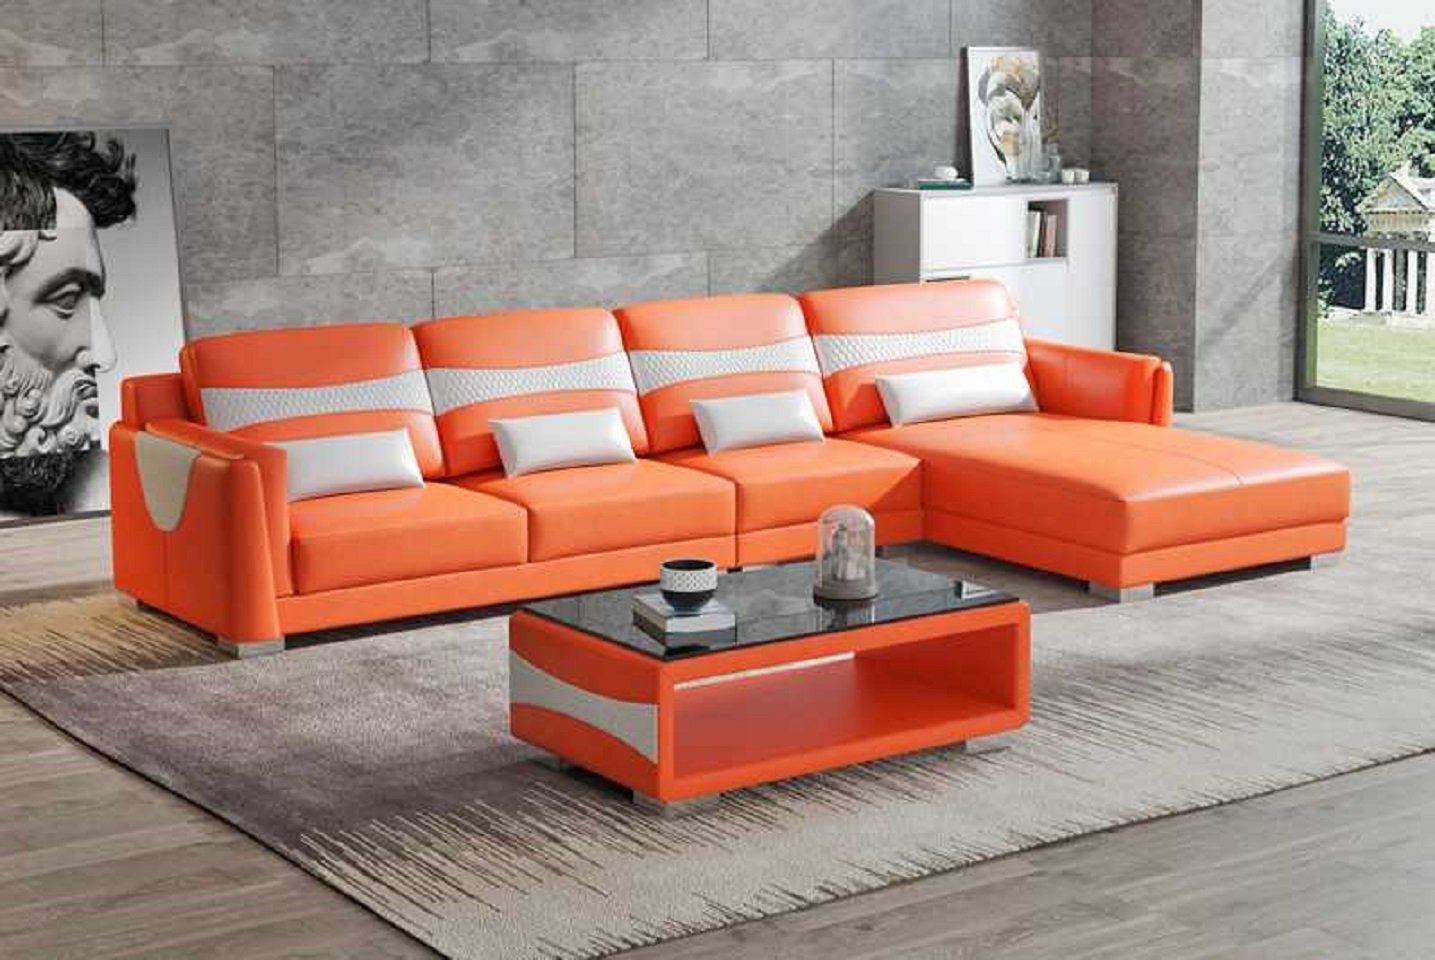 JVmoebel Ecksofa Luxus Eckgarnitur Ecksofa L Form Liege Couch Sofa Wohnzimmer Neu, 3 Teile, Made in Europe Orange/Weiß